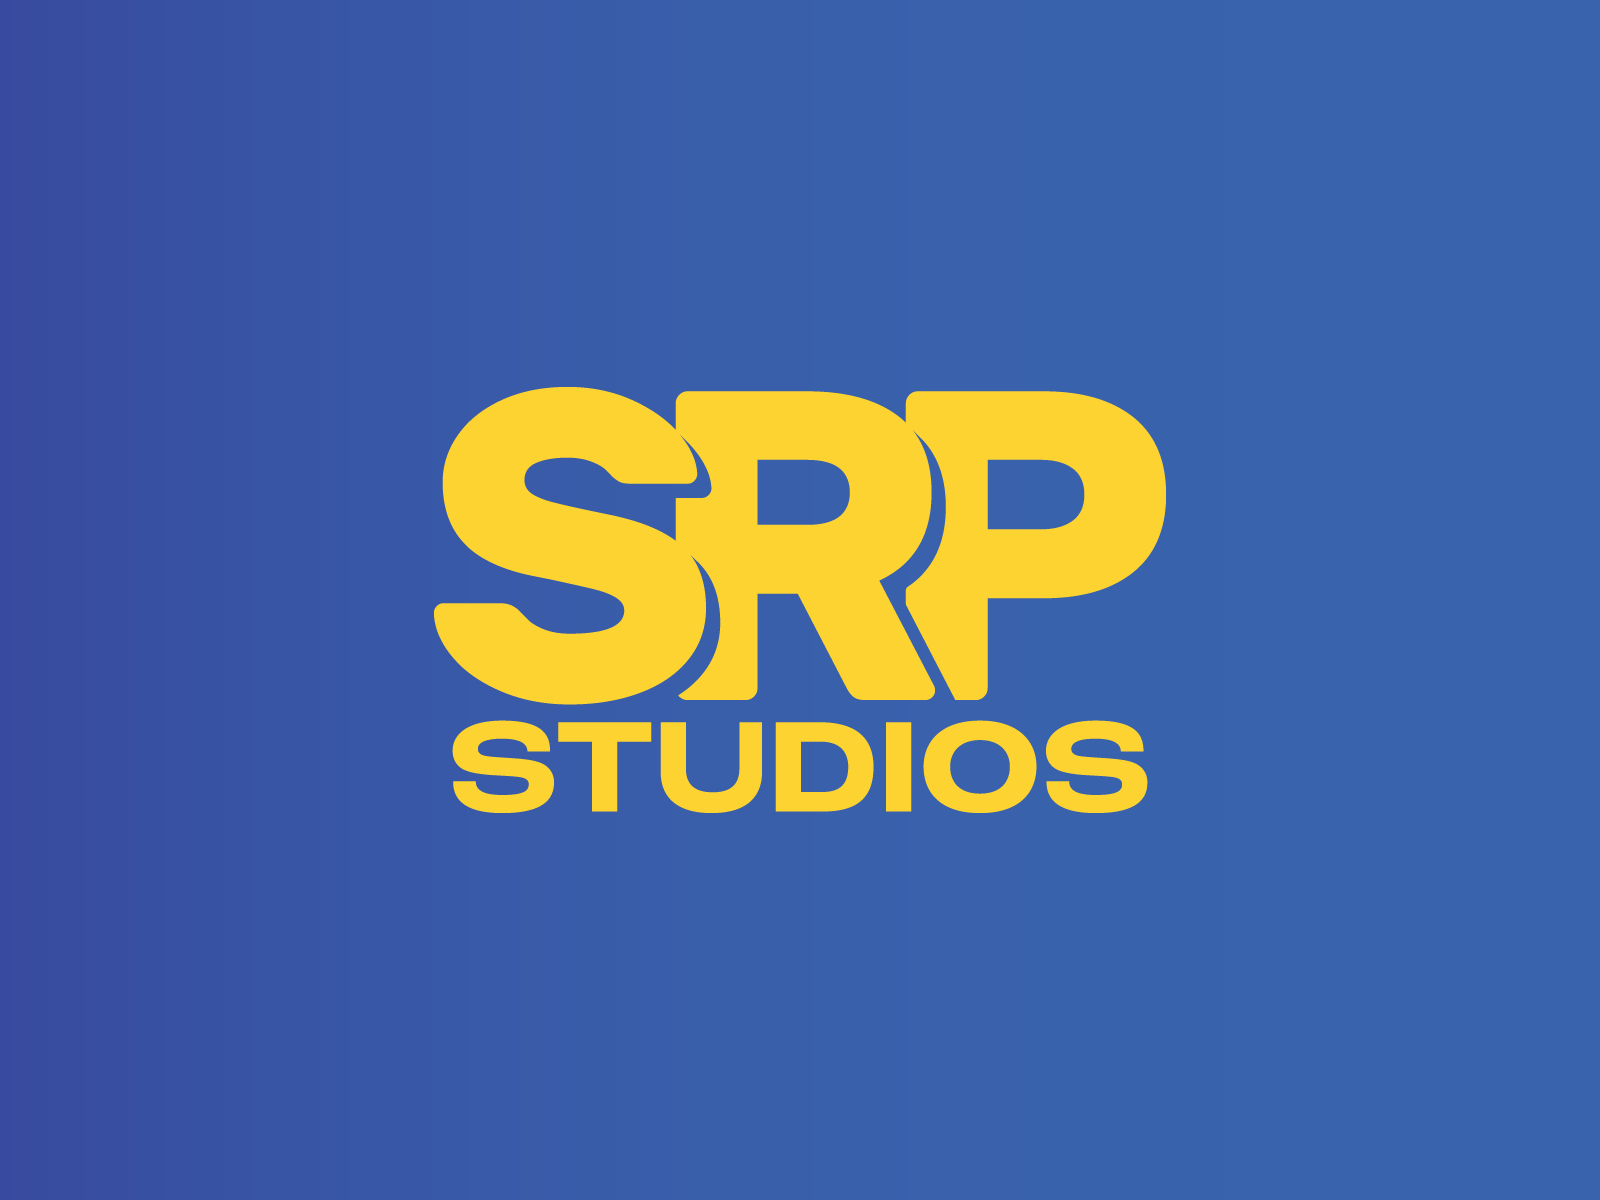 Logo, Branding, and More - SRP